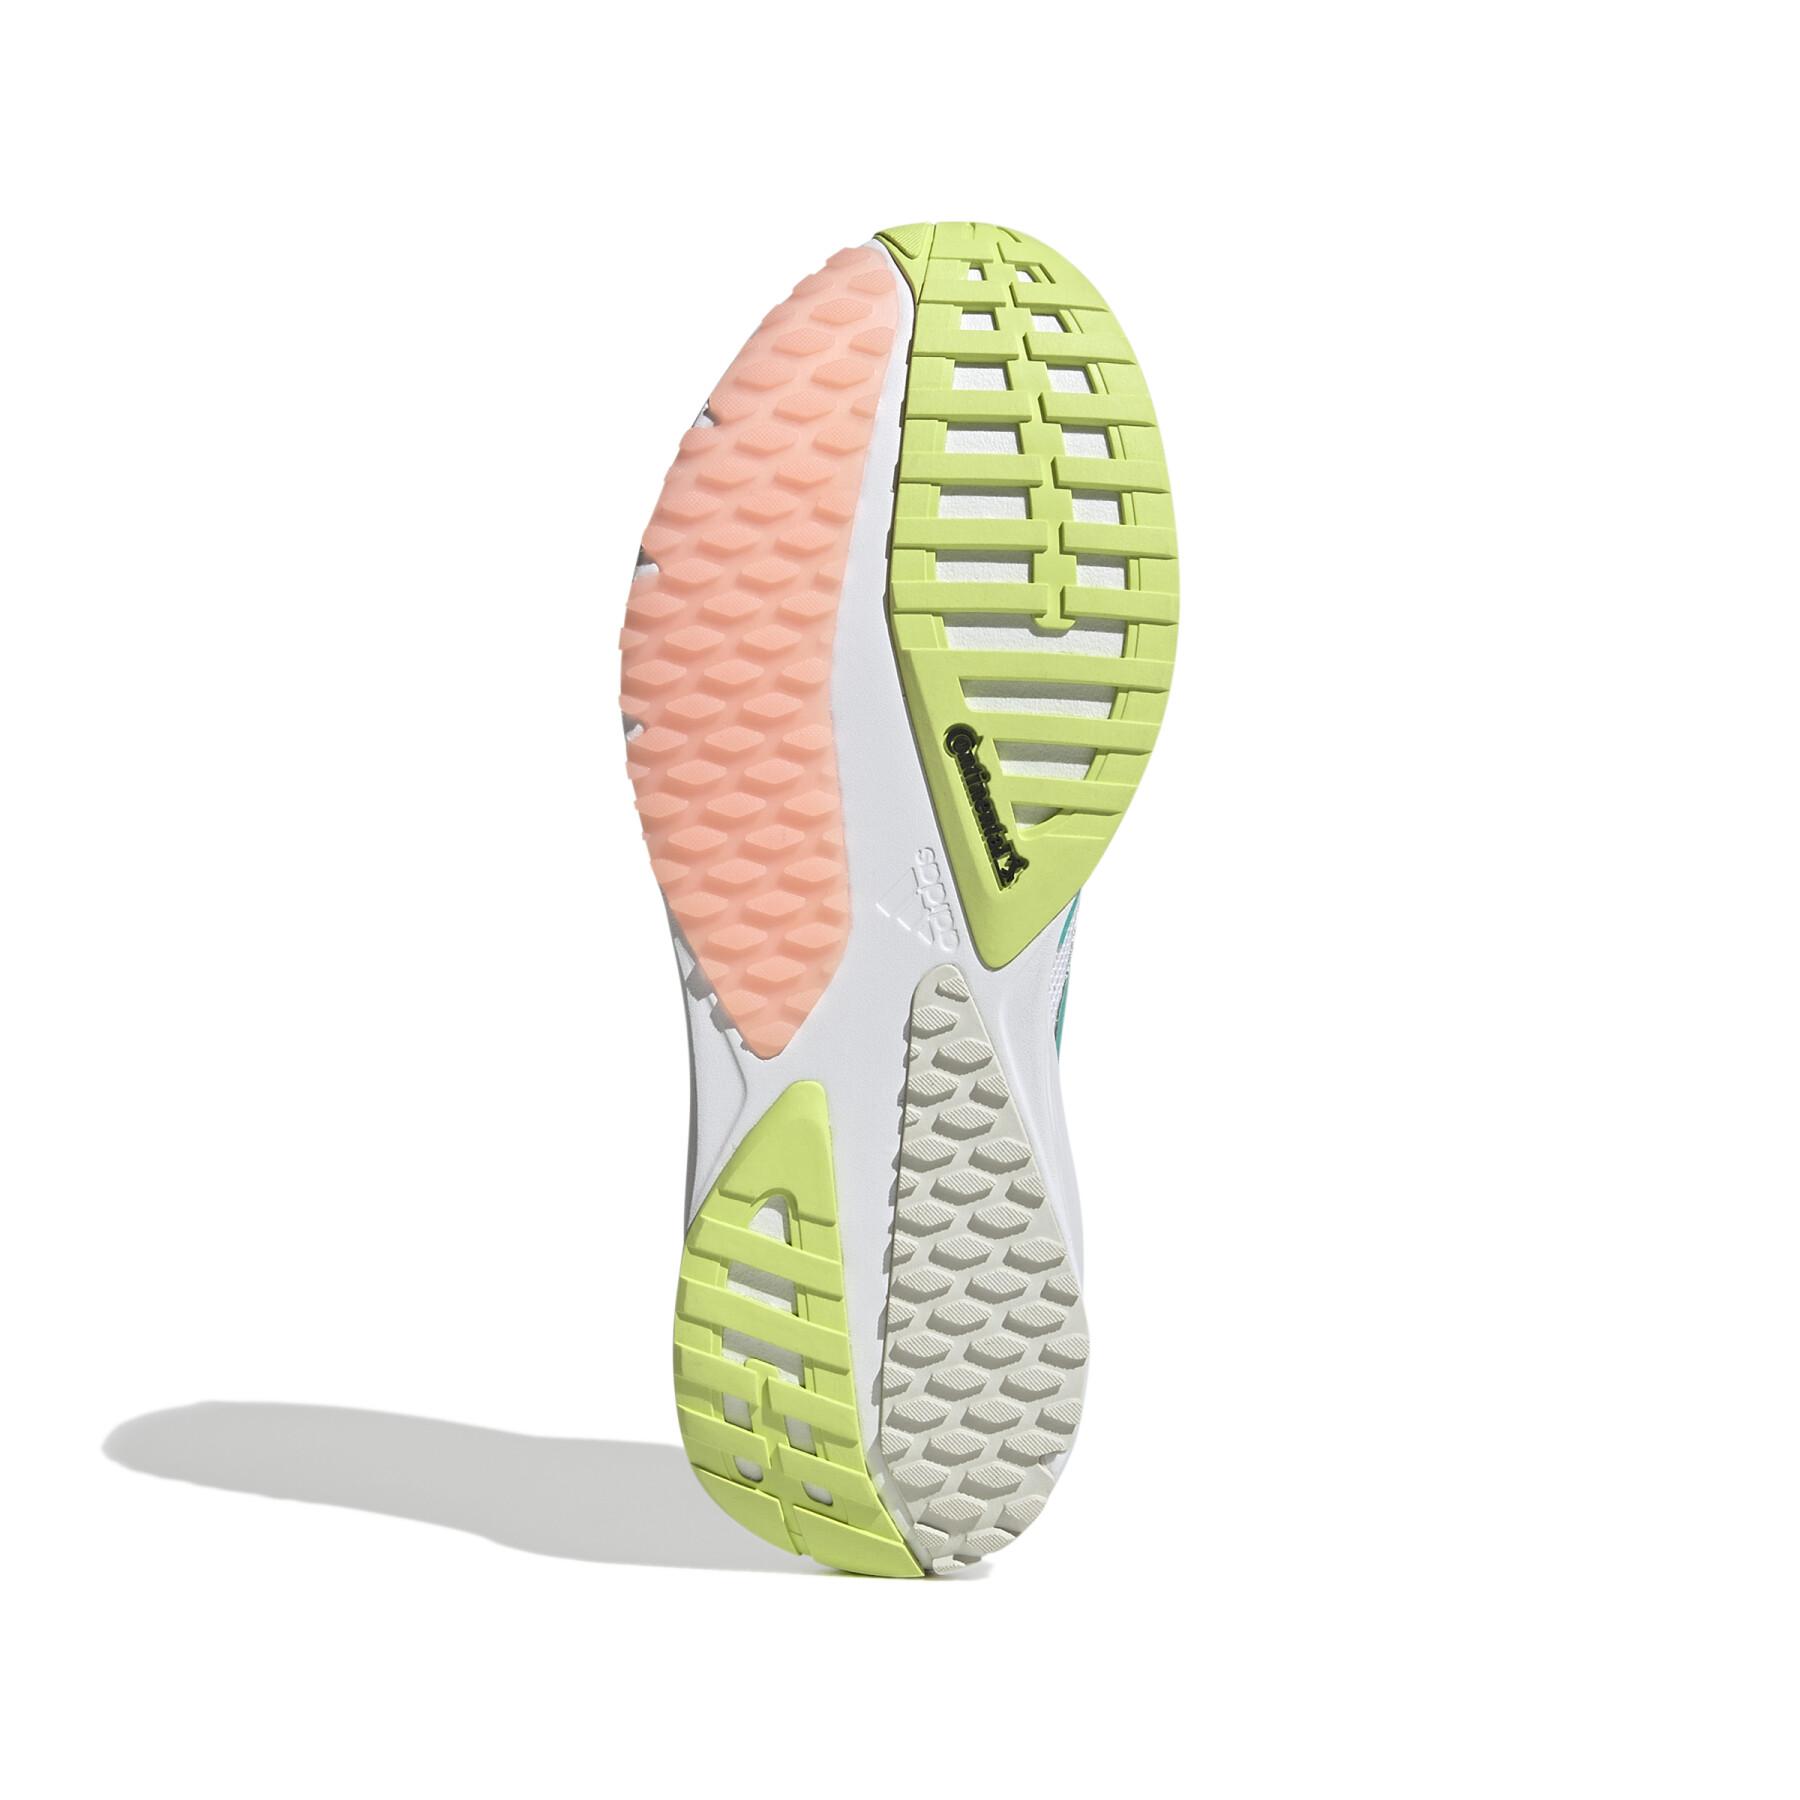 Laufschuhe für Frauen adidas SL20.3